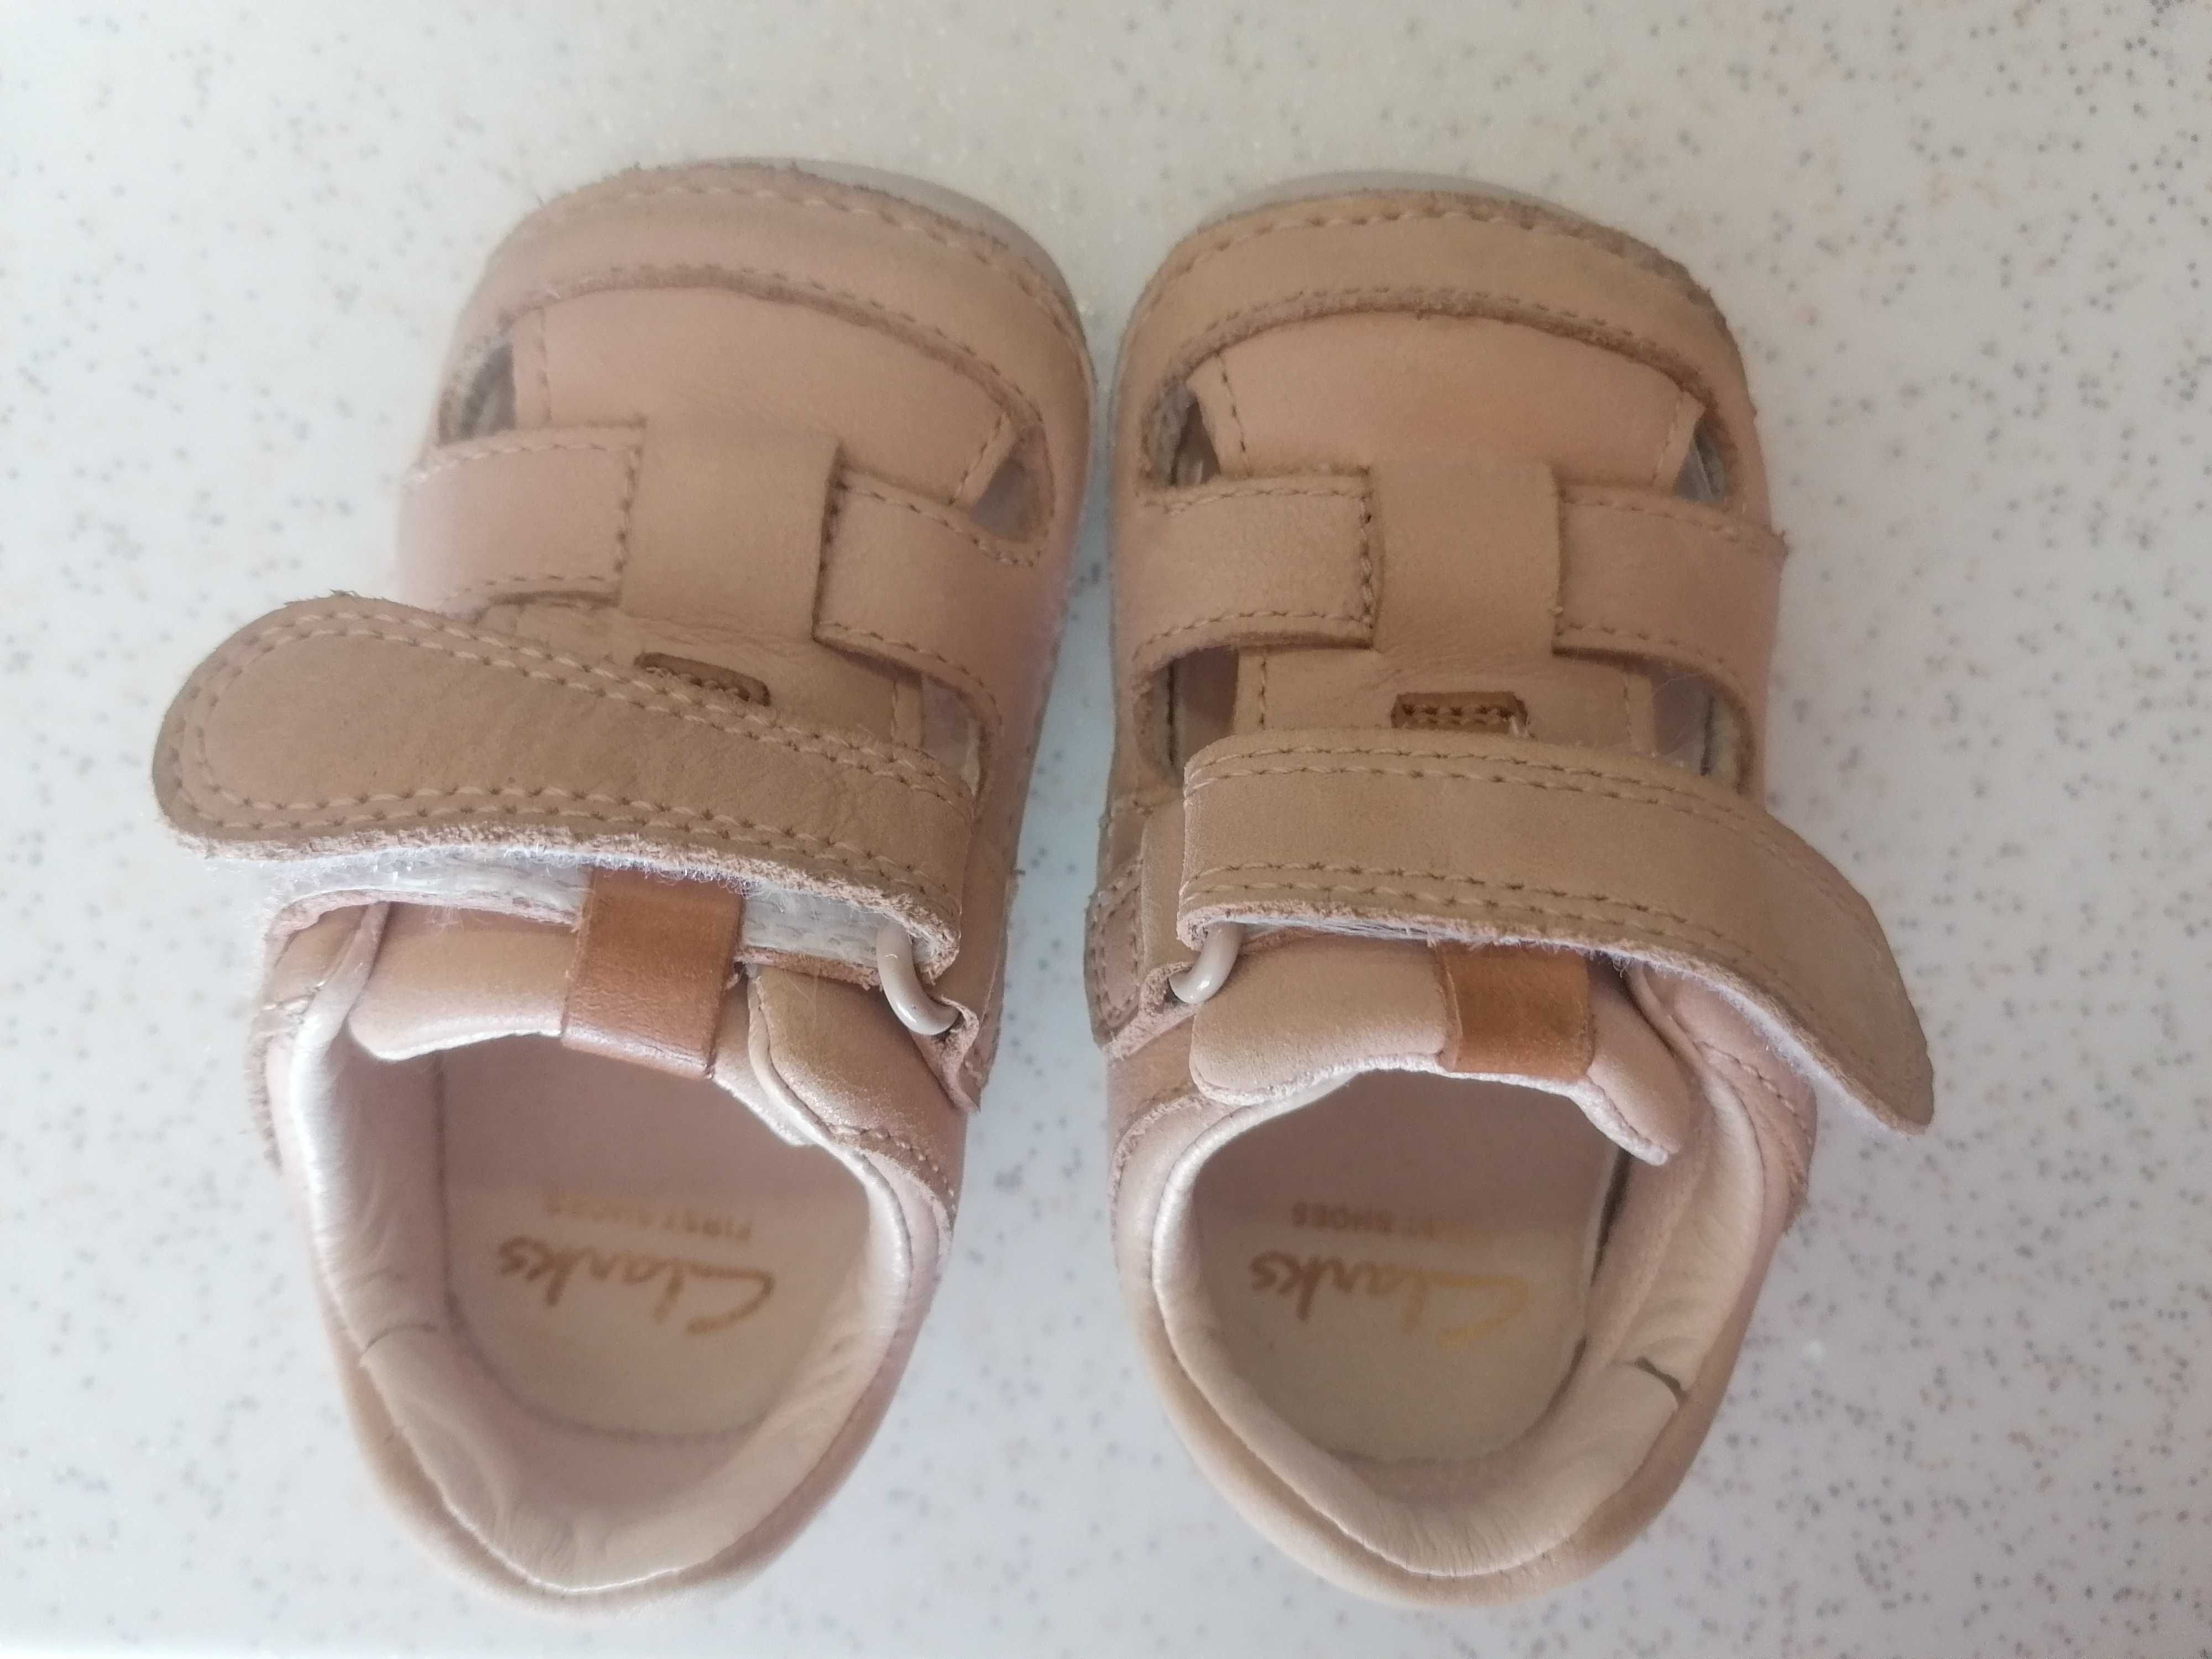 Бебешки кожени обувки Clarks за прохождане, barefoot, н. 18